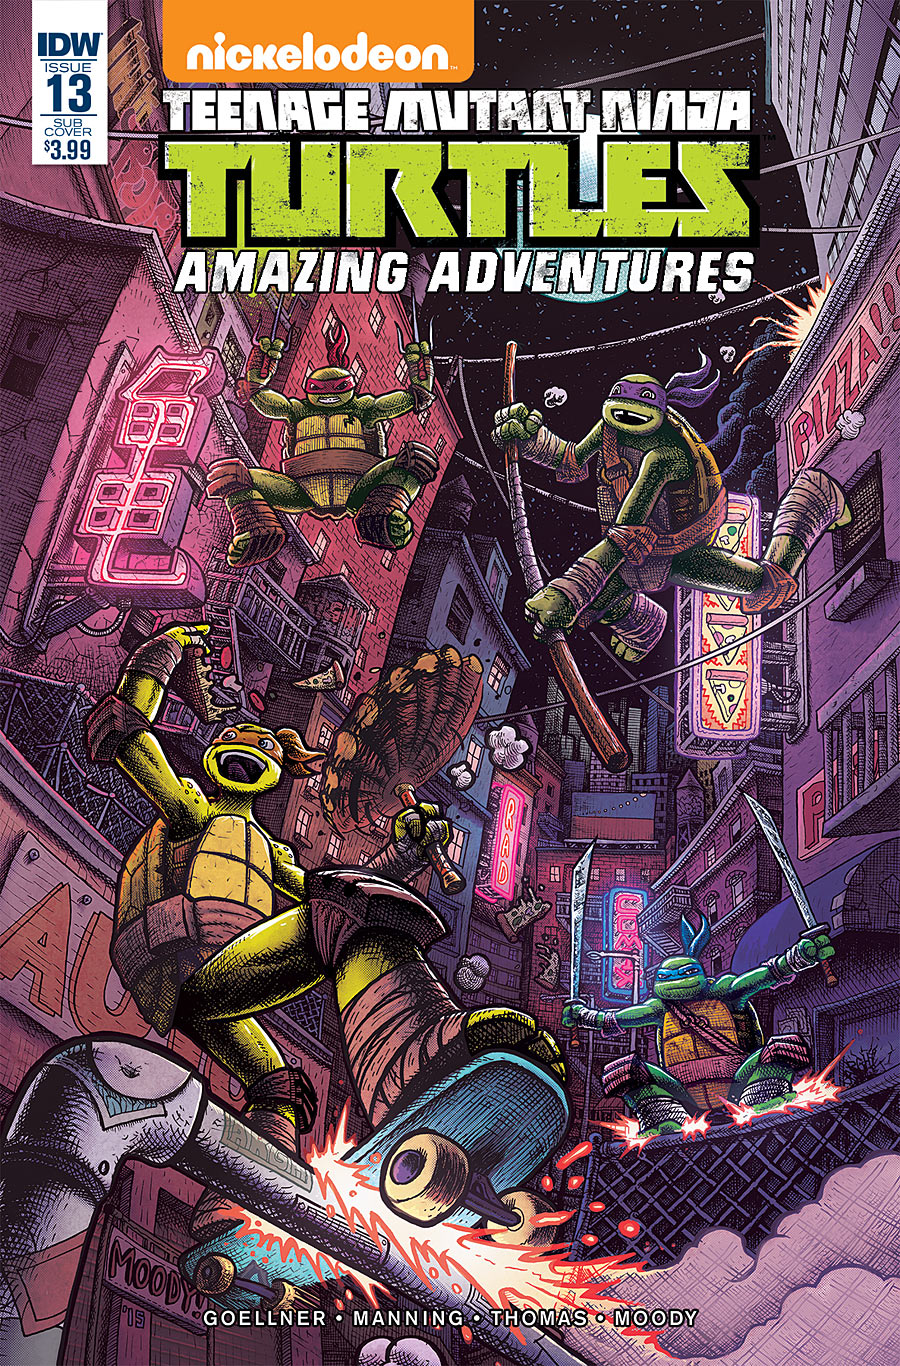 Teenage Mutant Ninja Turtles: Amazing Adventures #13